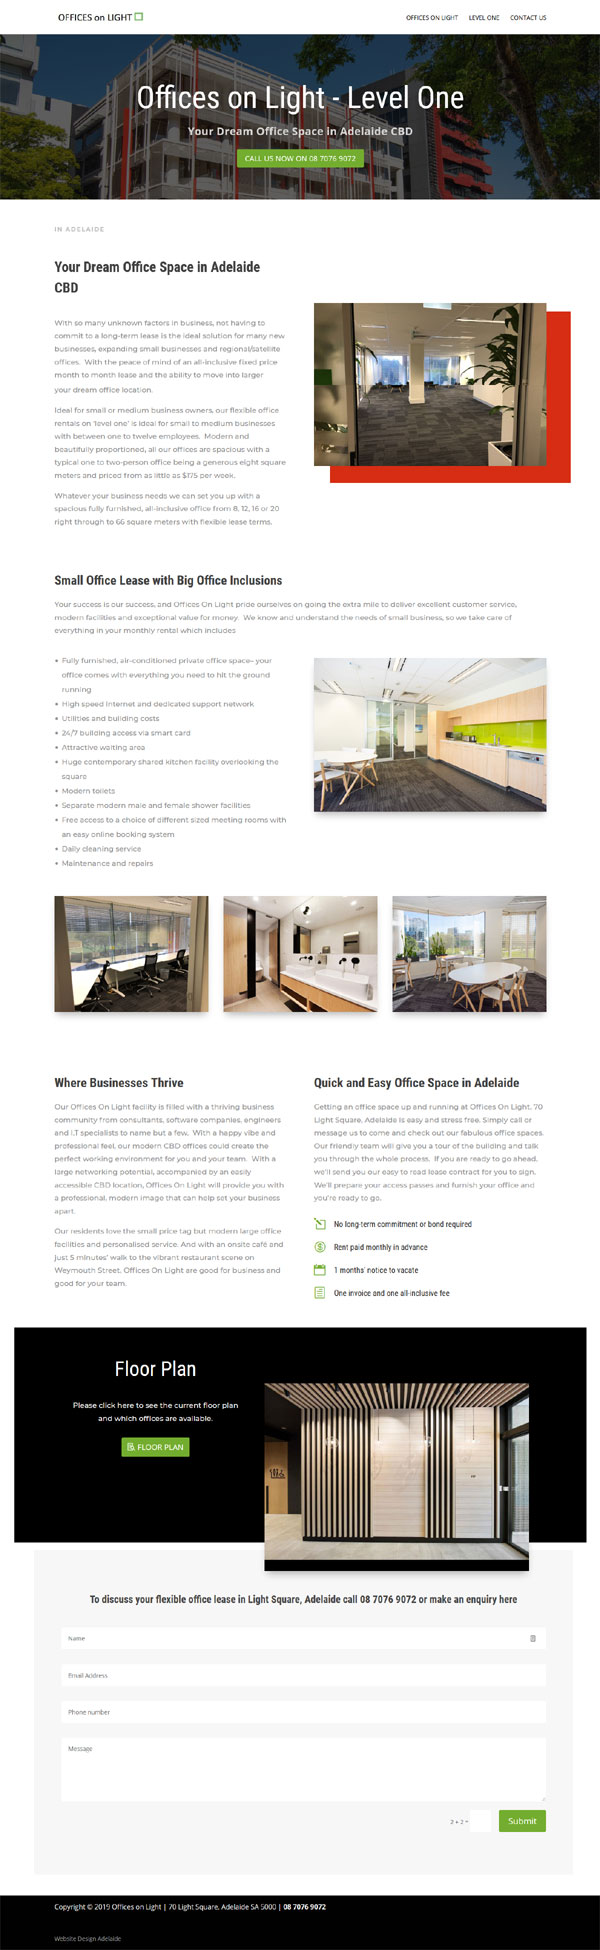 website design for offices on light in adelaide